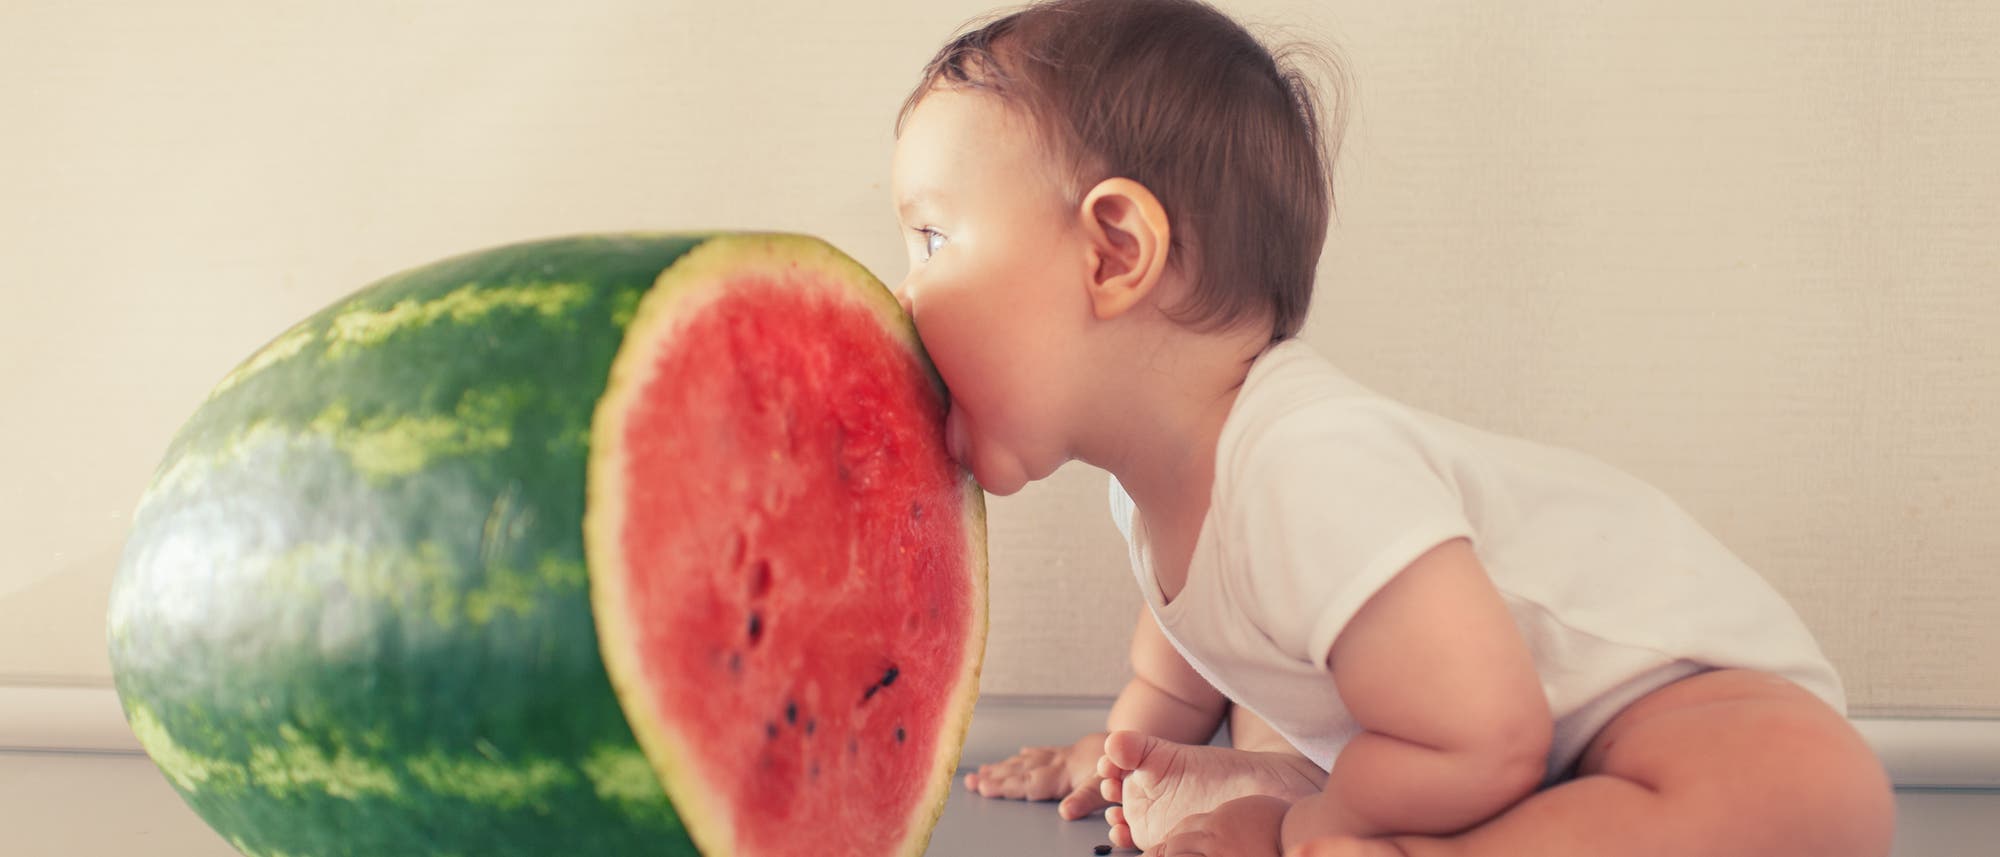 Kleinkind isst eine Melone